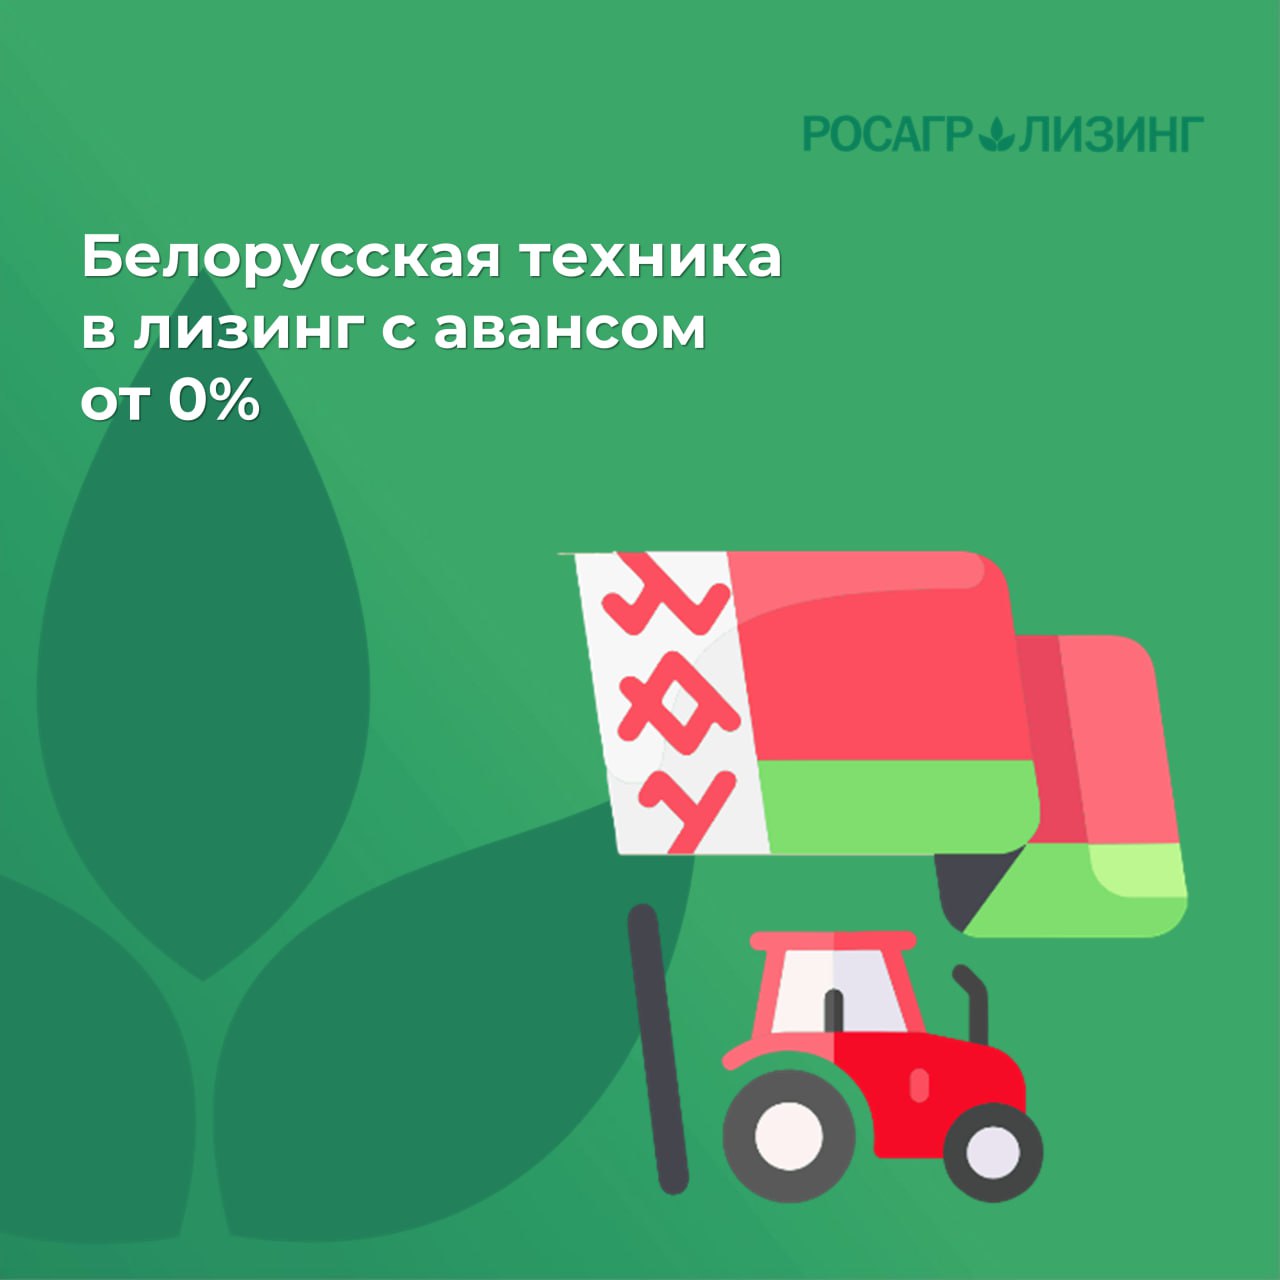 Росагролизинг поставит белорусскую технику в лизинг с авансом от 0%